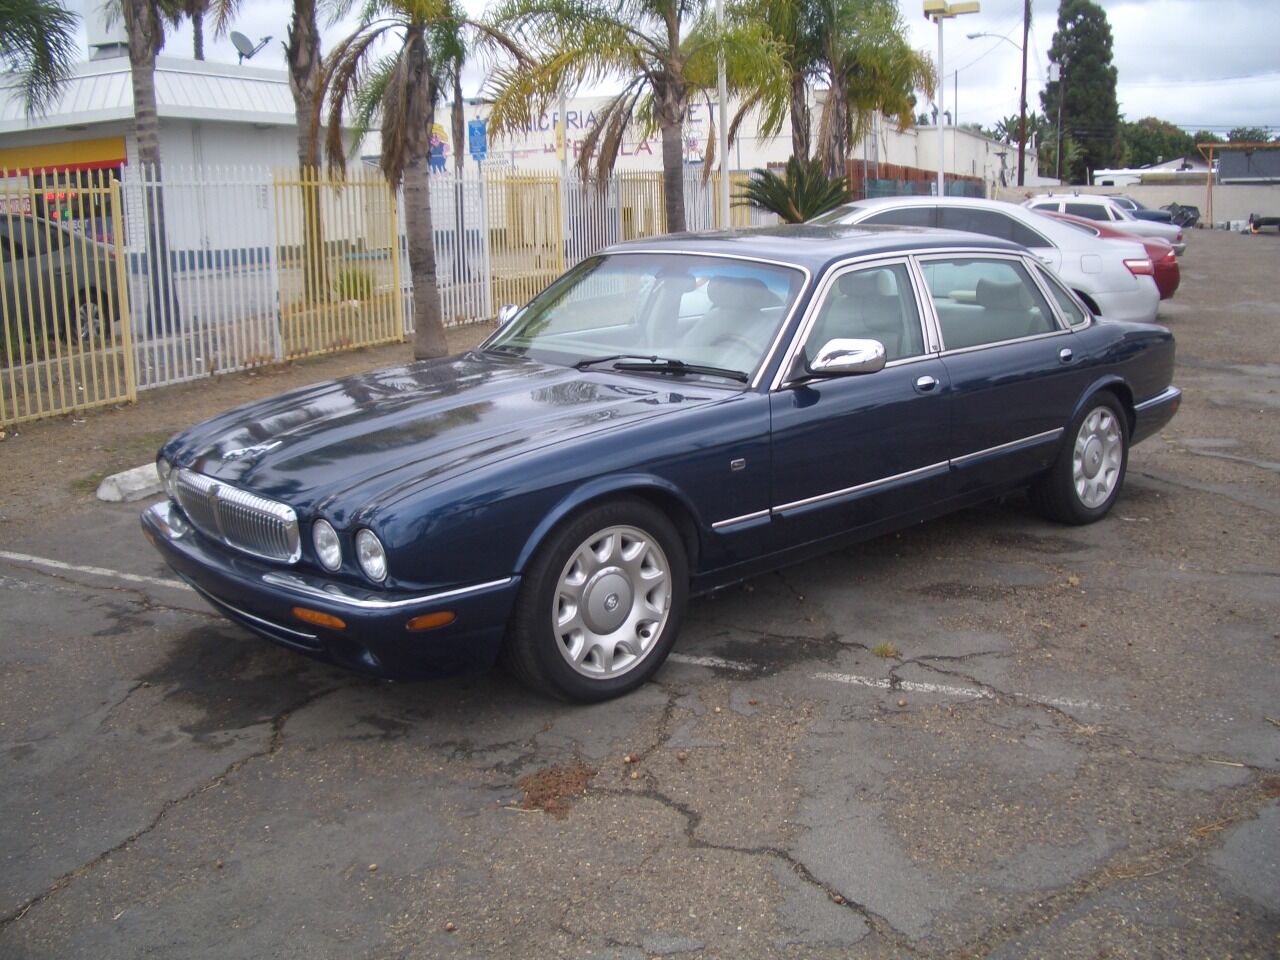 2001 Jaguar XJ For Sale - Carsforsale.com®